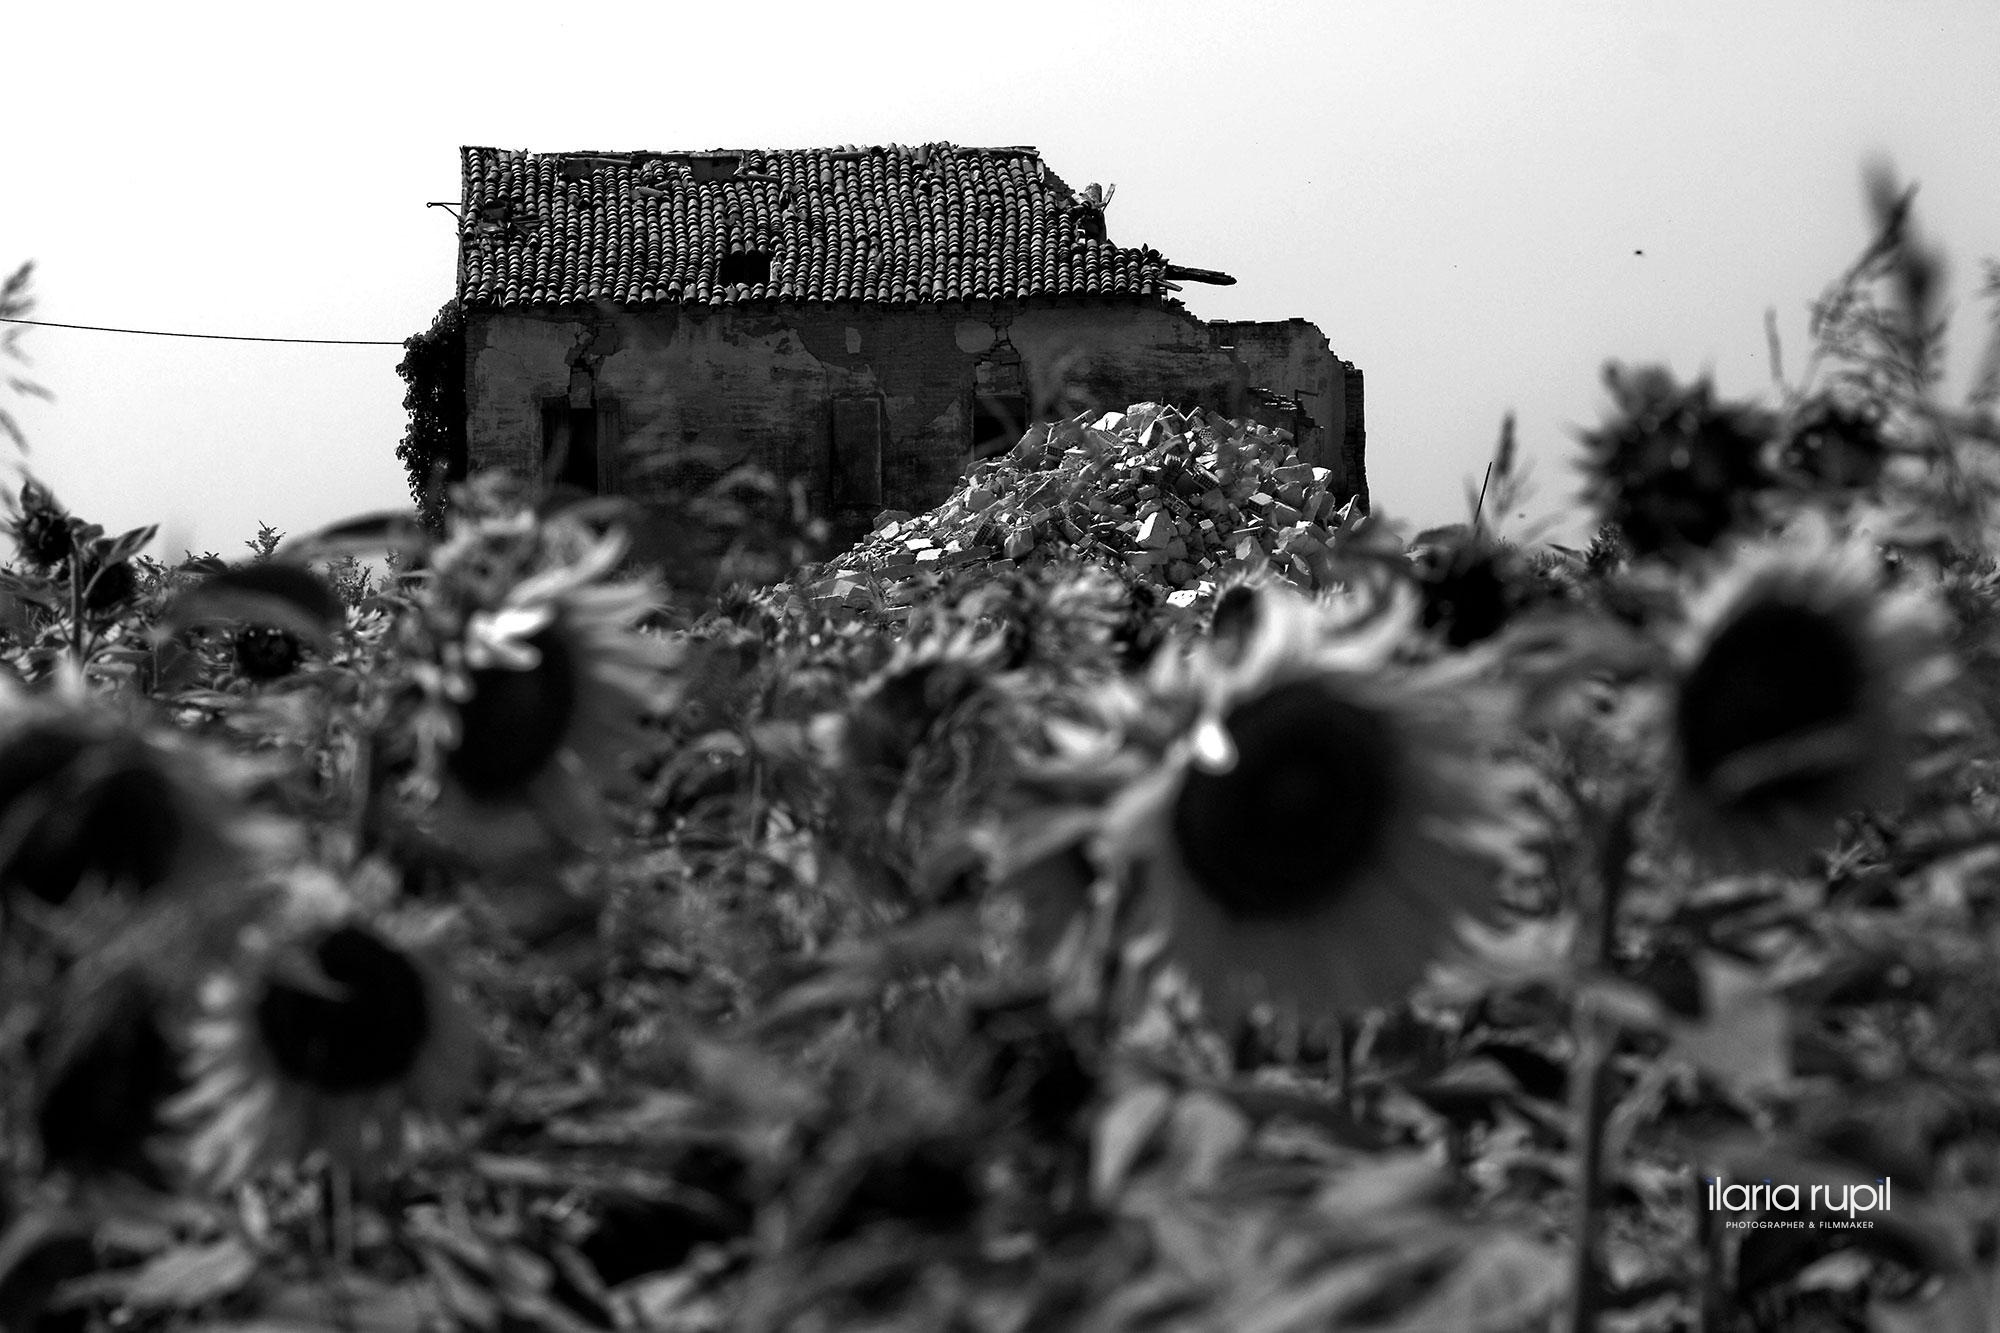 Ruins among Sunflowers in Rovereto sulla Secchia